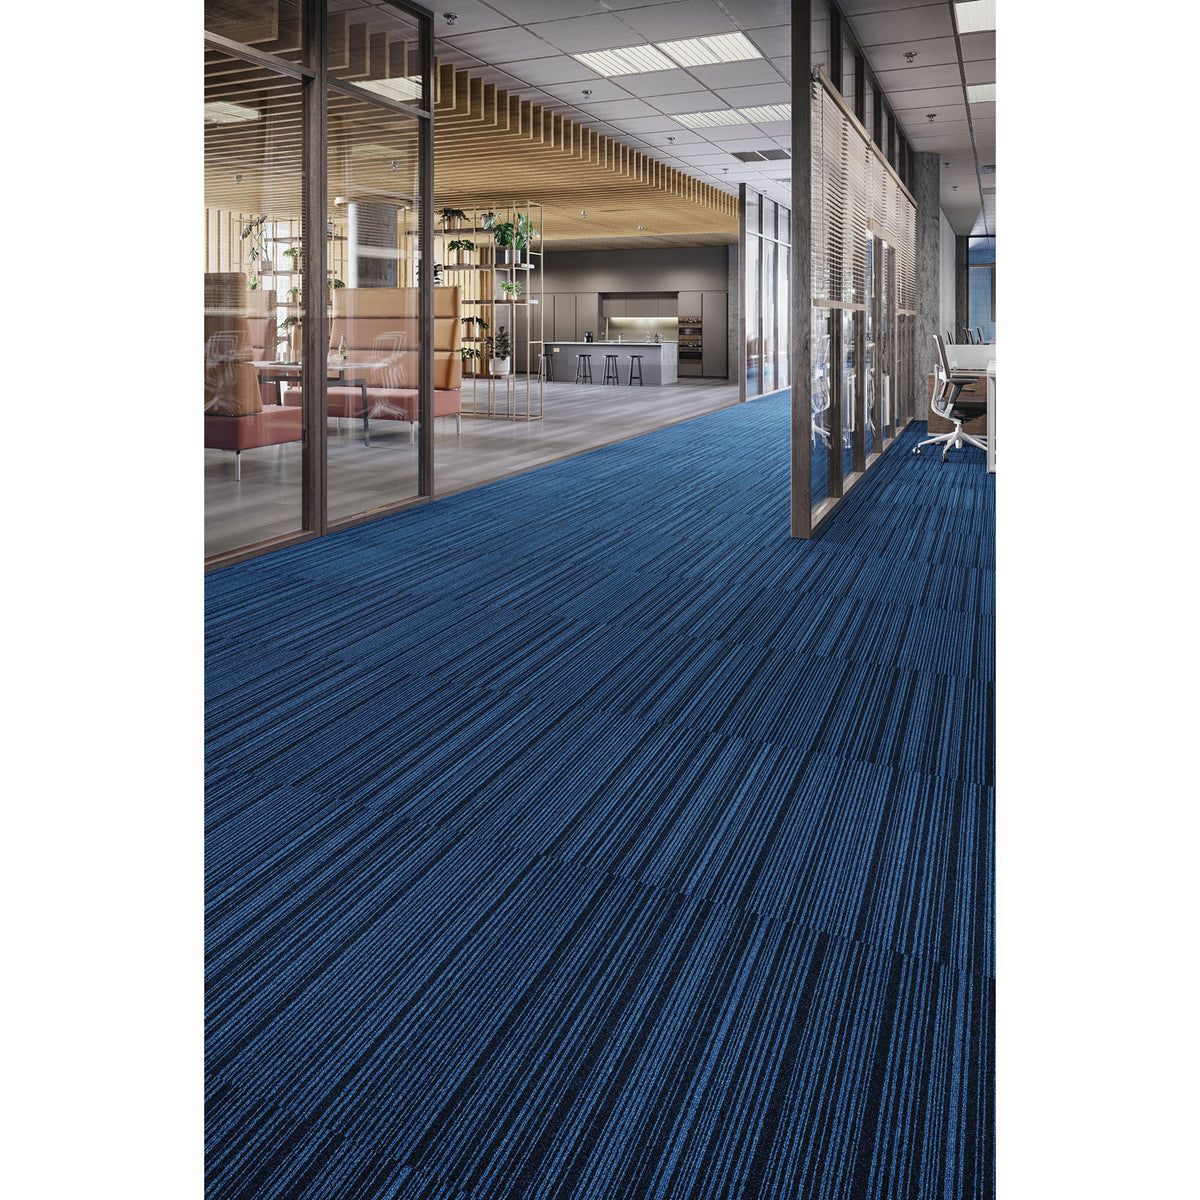 Mohawk Group - Art Intervention Draft Point Commercial Carpet Tile - Eminence 464